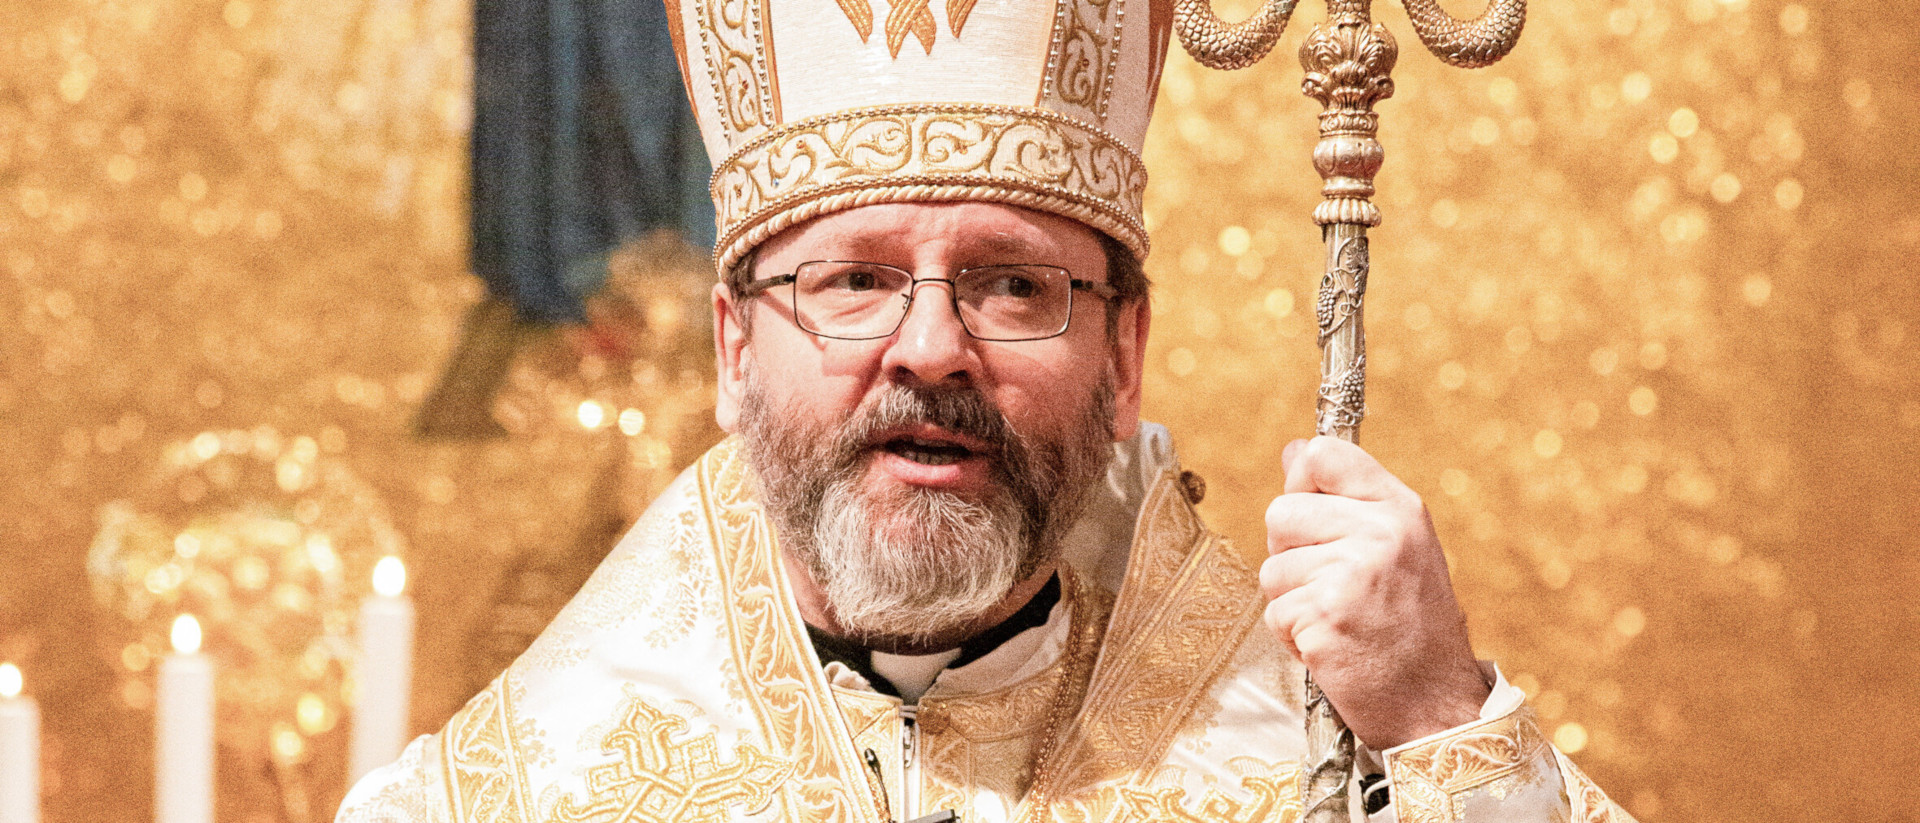 Der Erzbischof Swjatoslaw Schewtschuk von Kiew.